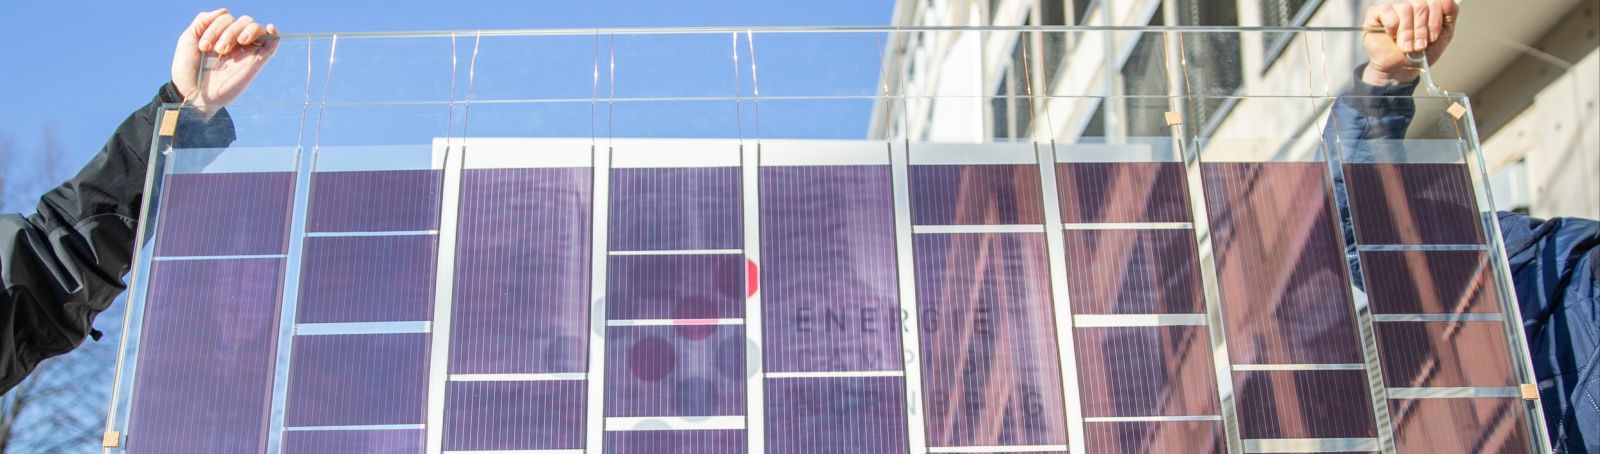 Horizontaler baulicher Sonnenschutz als Fassadenelement: Die Forschenden haben ein Glasvordach mit integrierter OPV entwickelt.